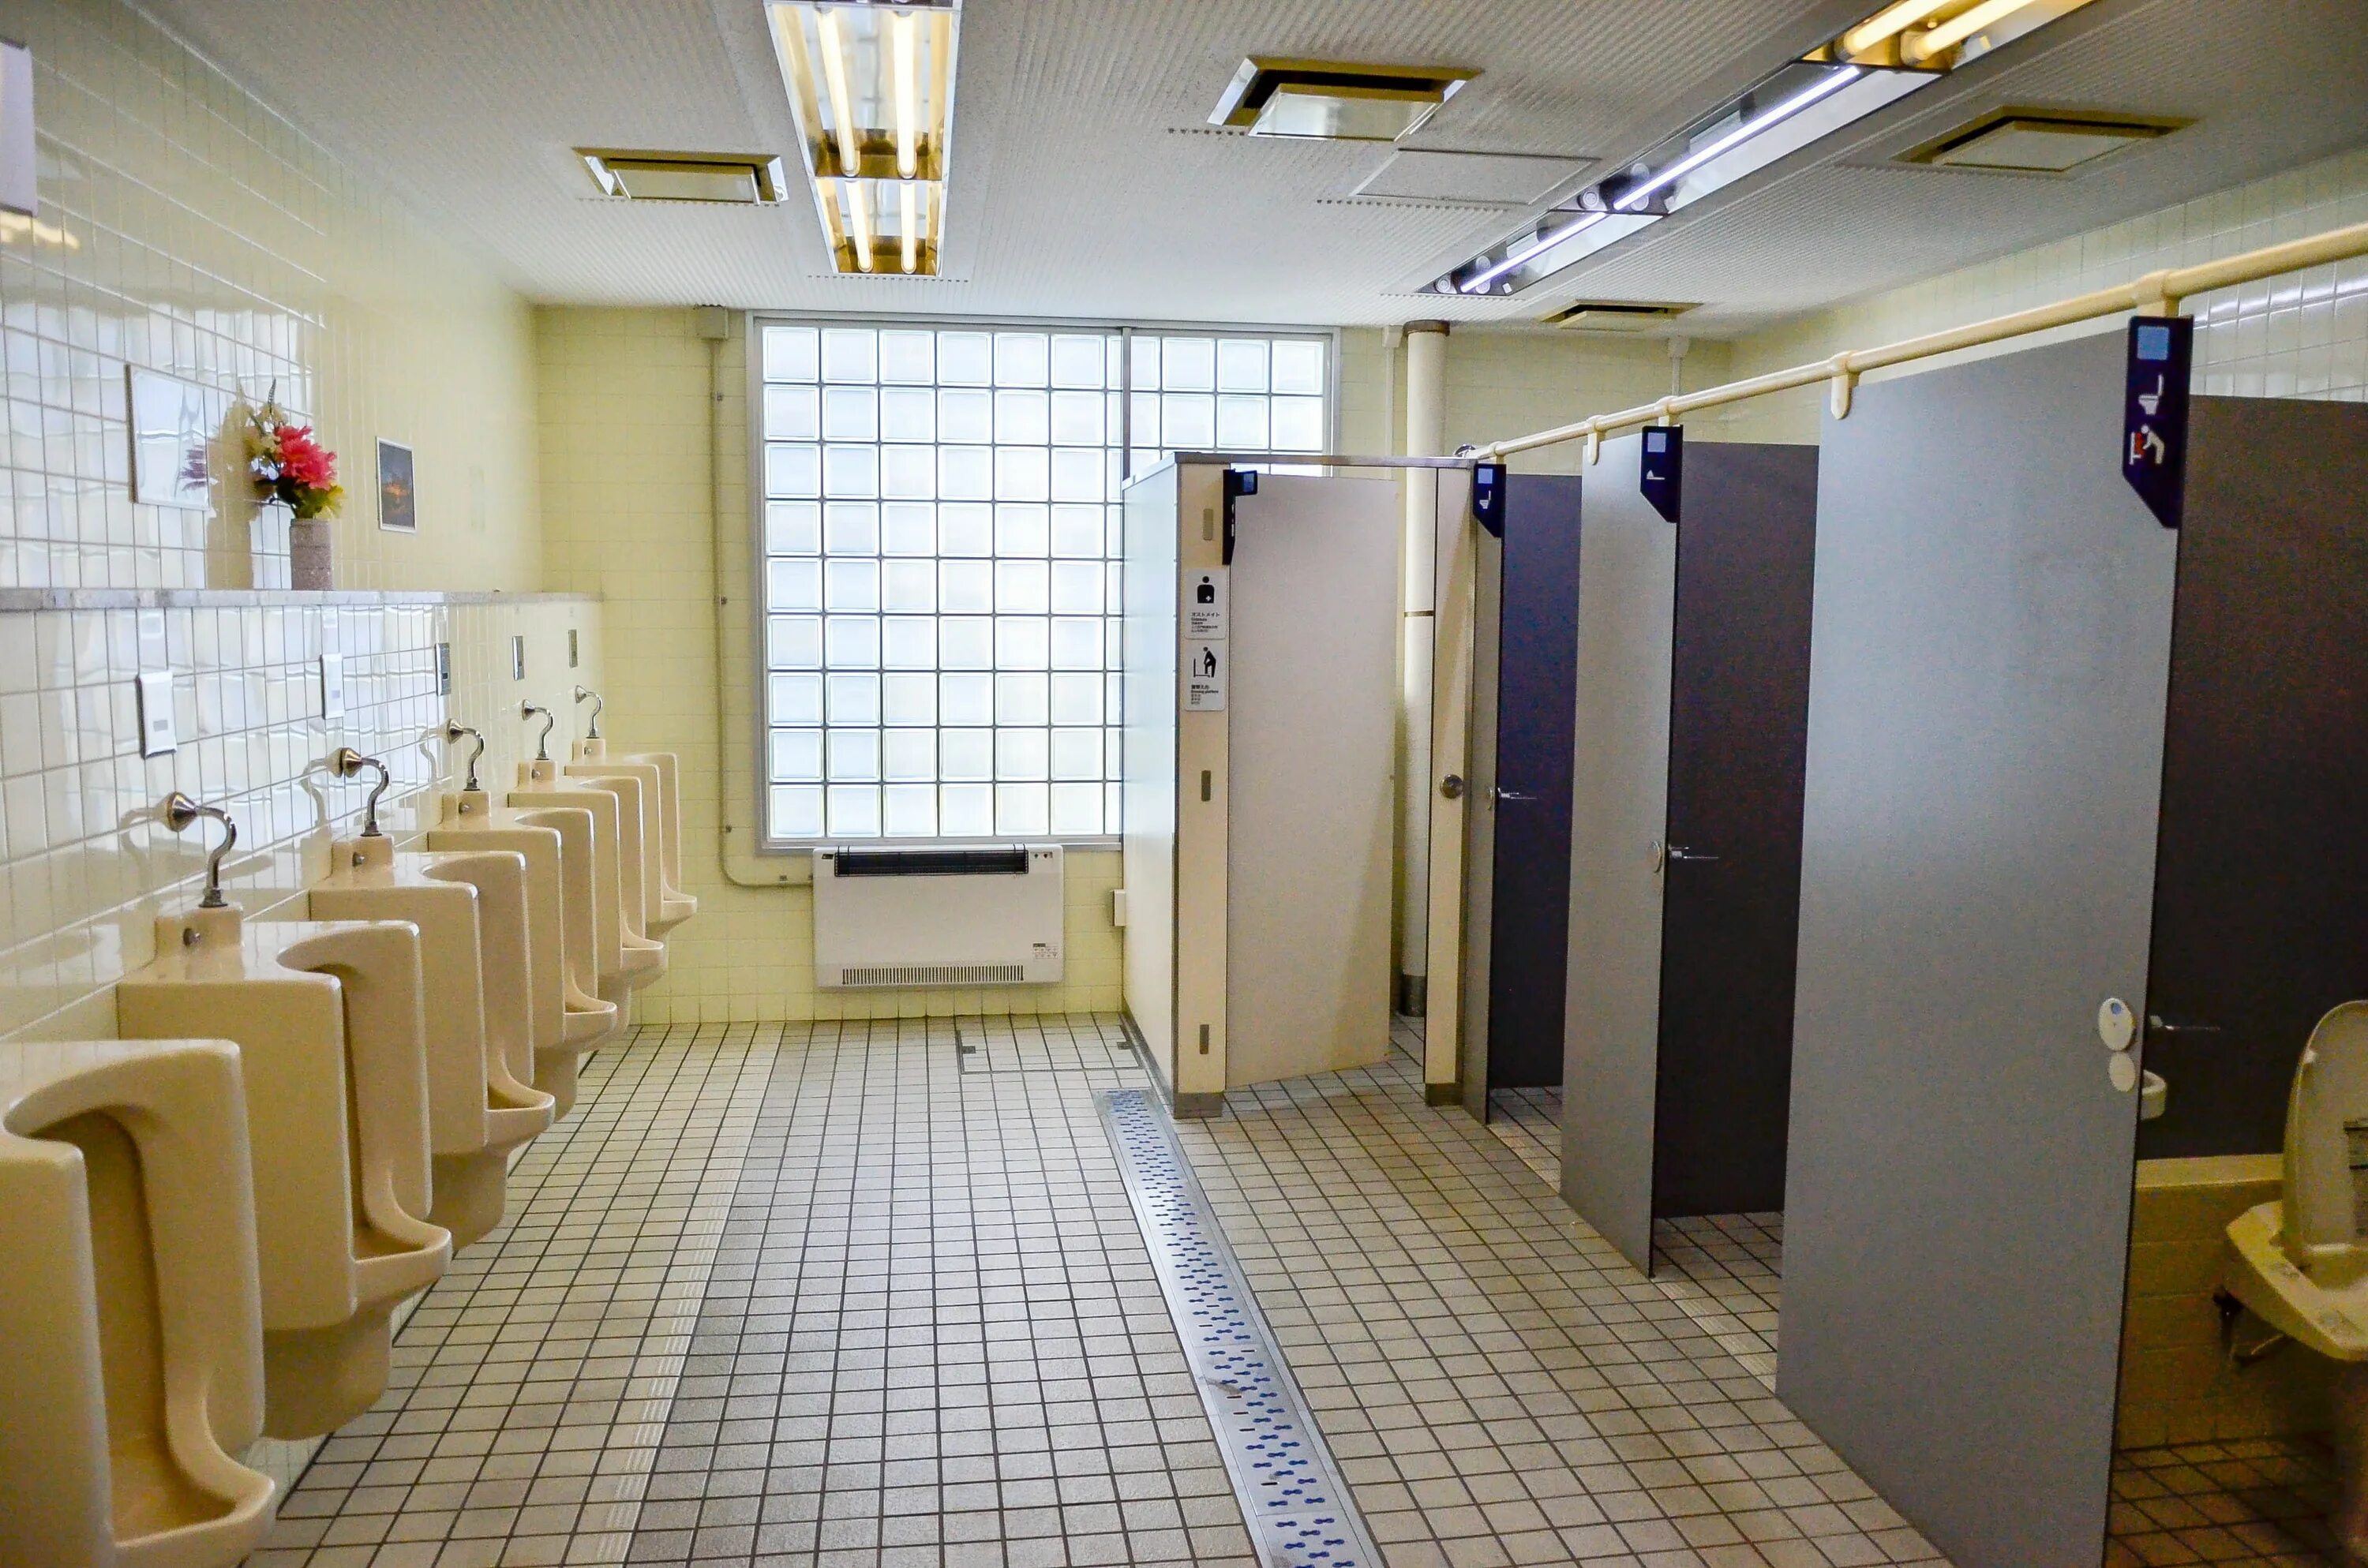 Общественный туалет. Школа туалет в Японии. Санузел в школе. Туалет в школе. Какие туалеты в школе